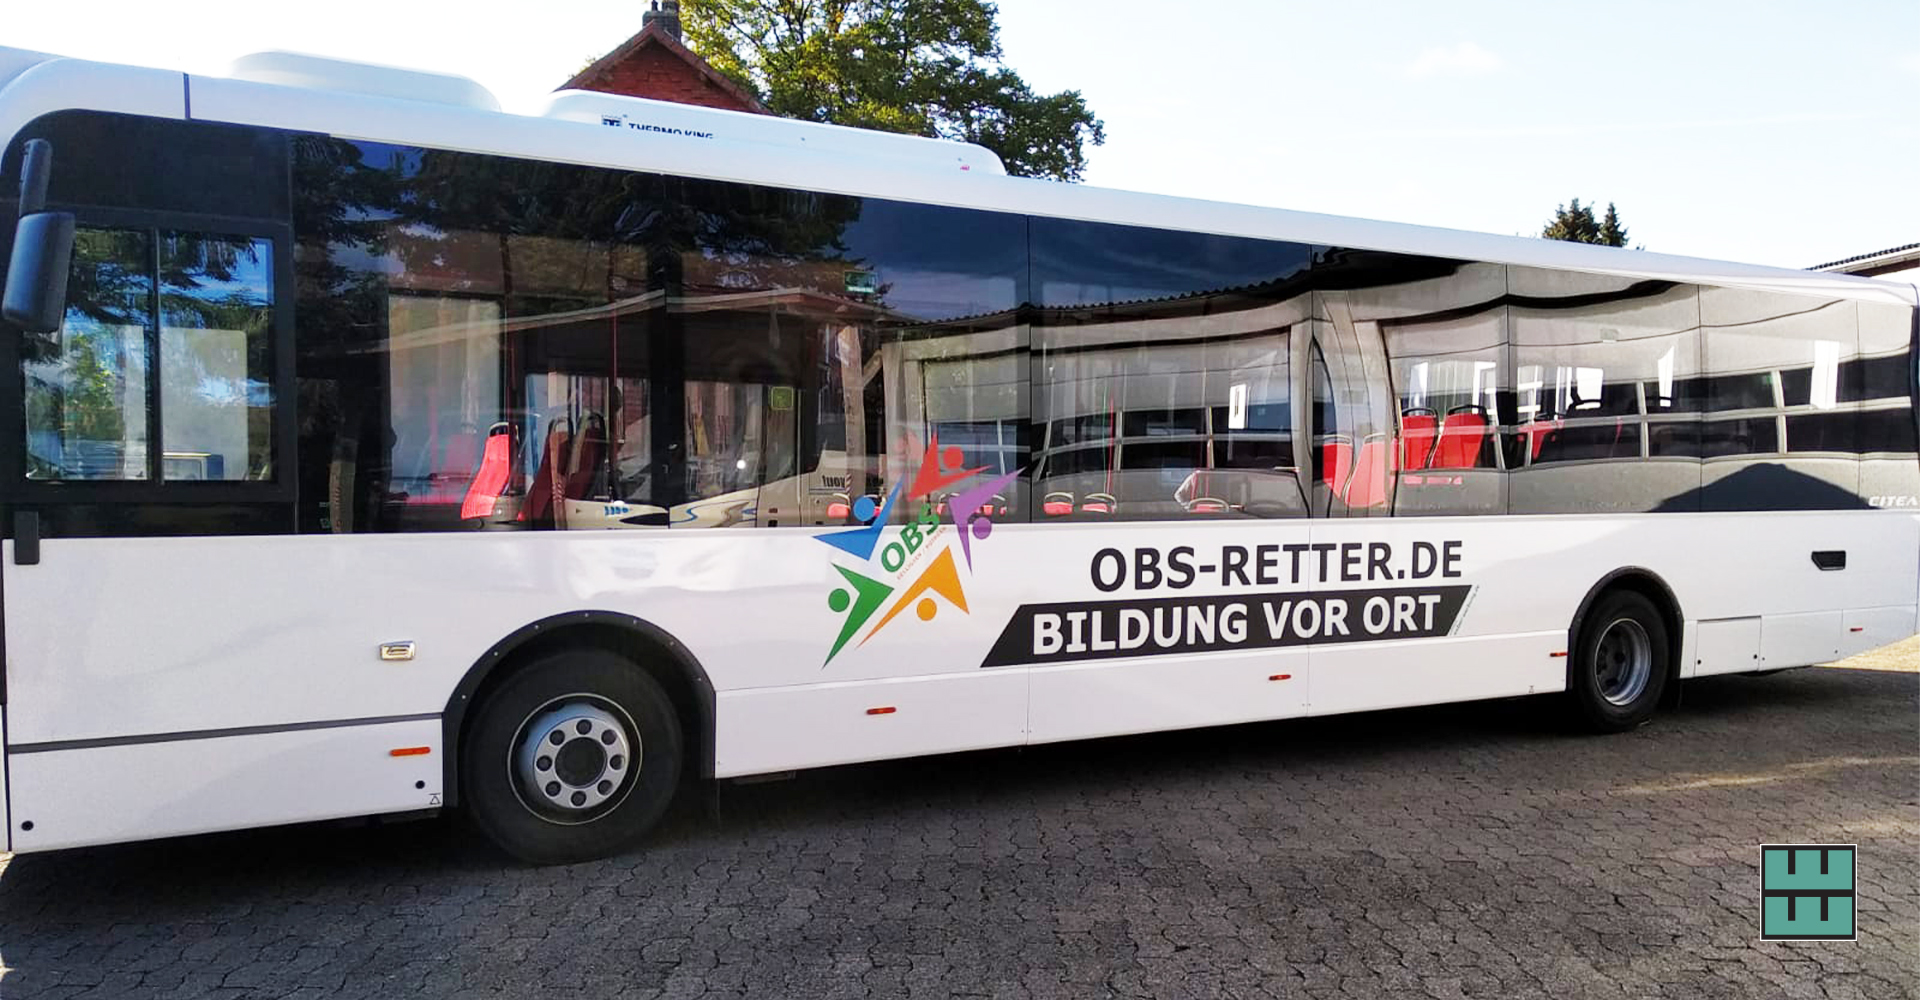 Koch Busreisen macht mit einer neuen Bus-Beklebung auf das Projekt "OBS Retter" aufmerksam. Wir haben mit dem Druck und der Beklebung unterstützt!